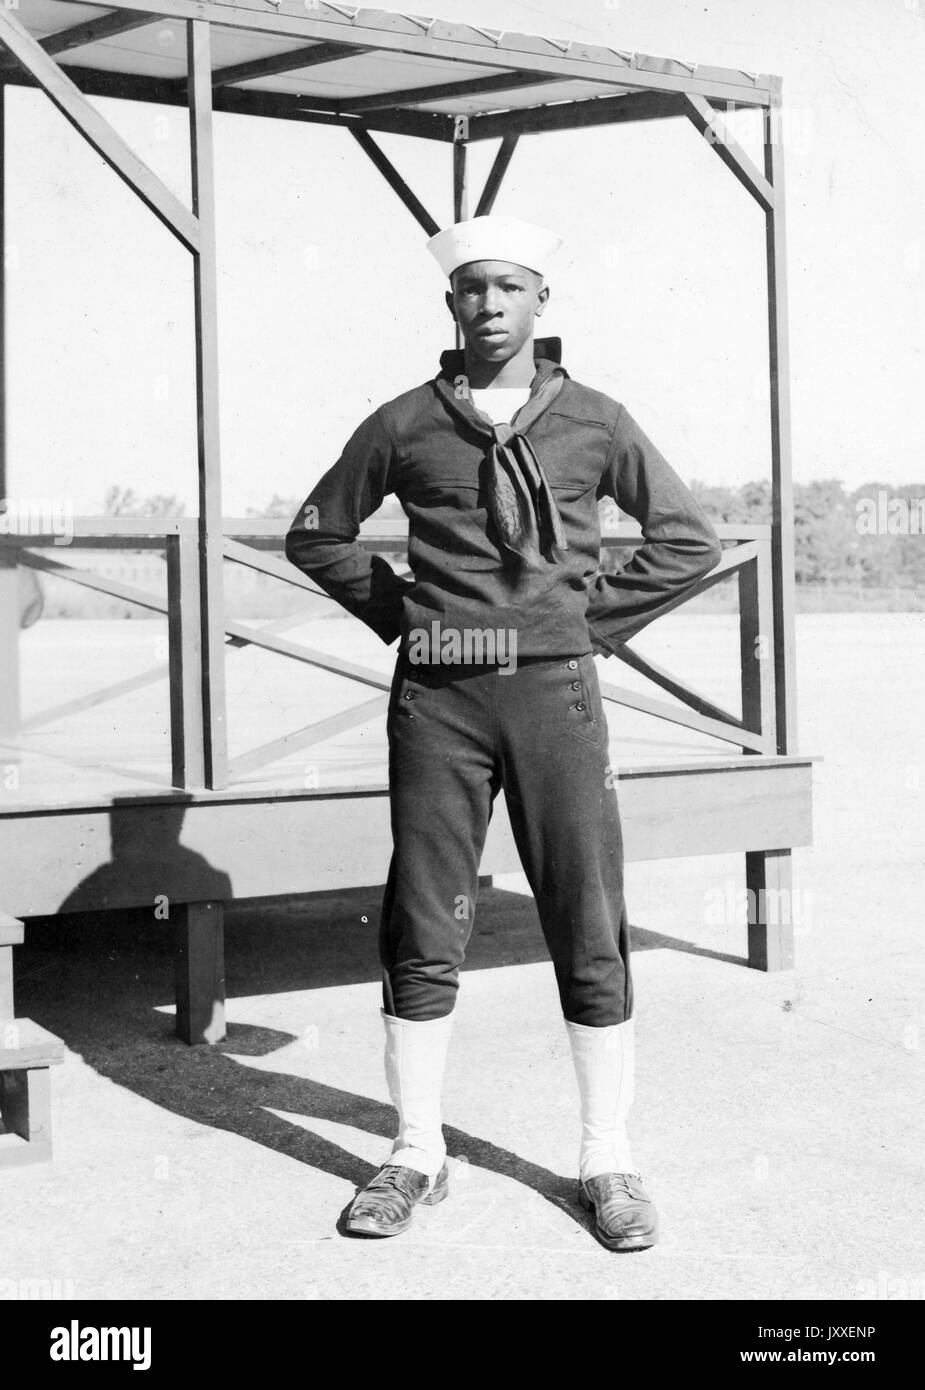 Portrait d'un marin de la marine des États-Unis d'Amérique Afrique debout devant une plate-forme en bois, il porte un uniforme de marin de couleur sombre et une lumière colorée sailor hat, ses bras sont pliés et les mains derrière le dos, 1920. Banque D'Images